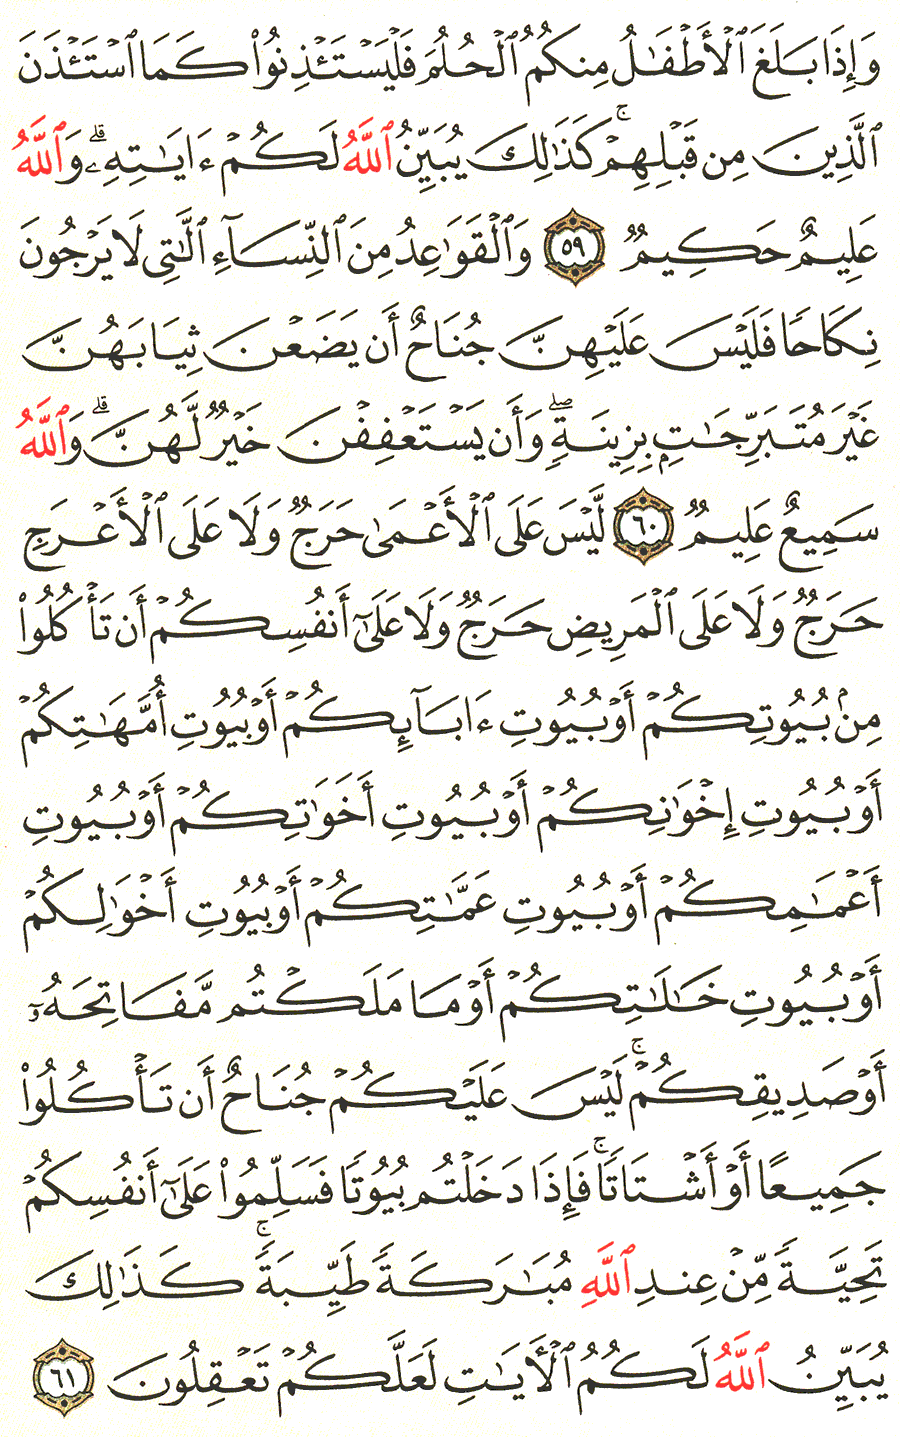 الصفحة رقم 358  من القرآن الكريم مكتوبة من المصحف